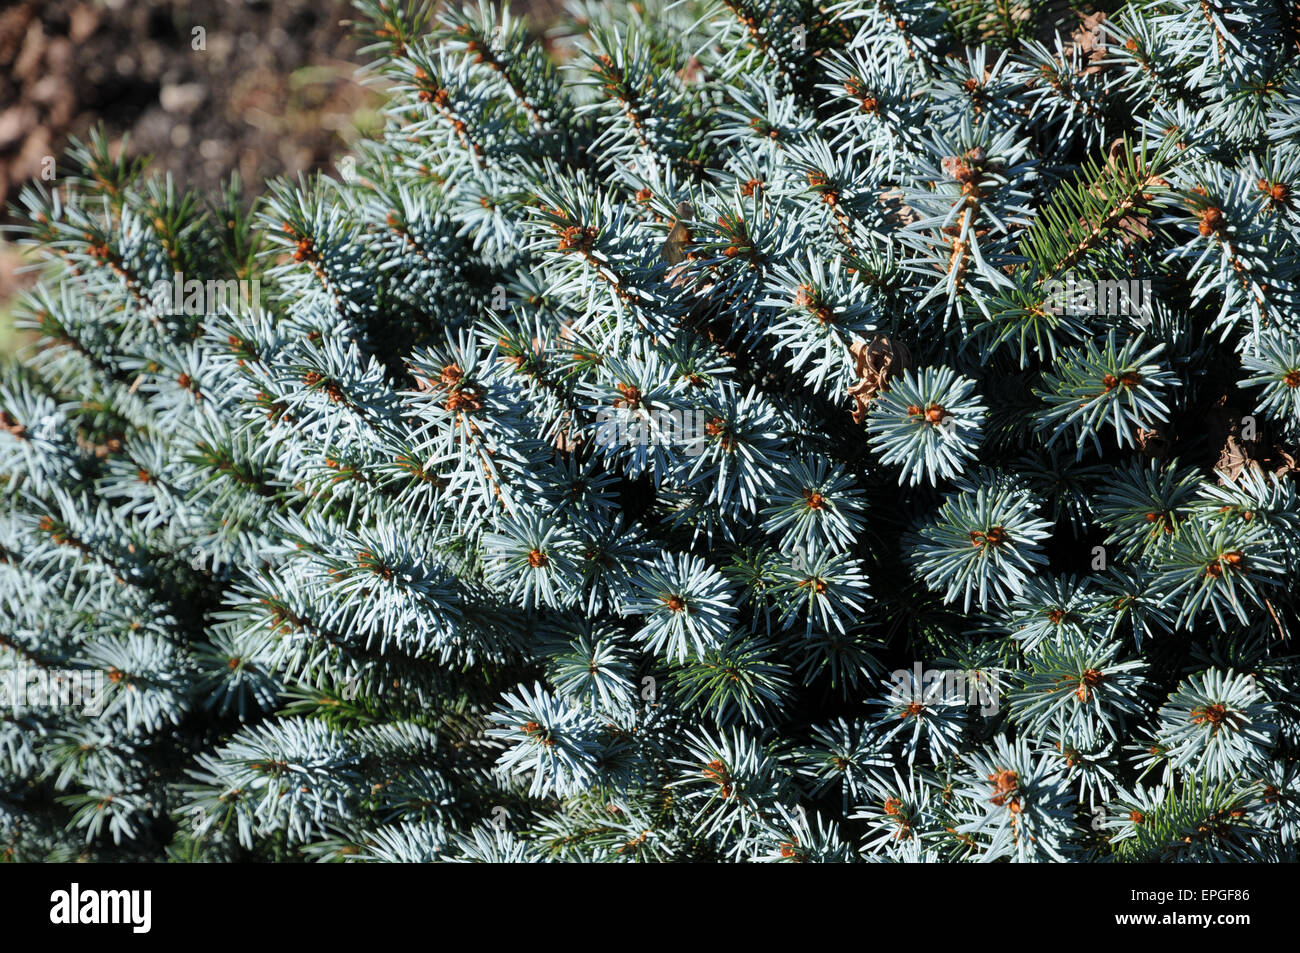 Dwarf sitka spruce Stock Photo